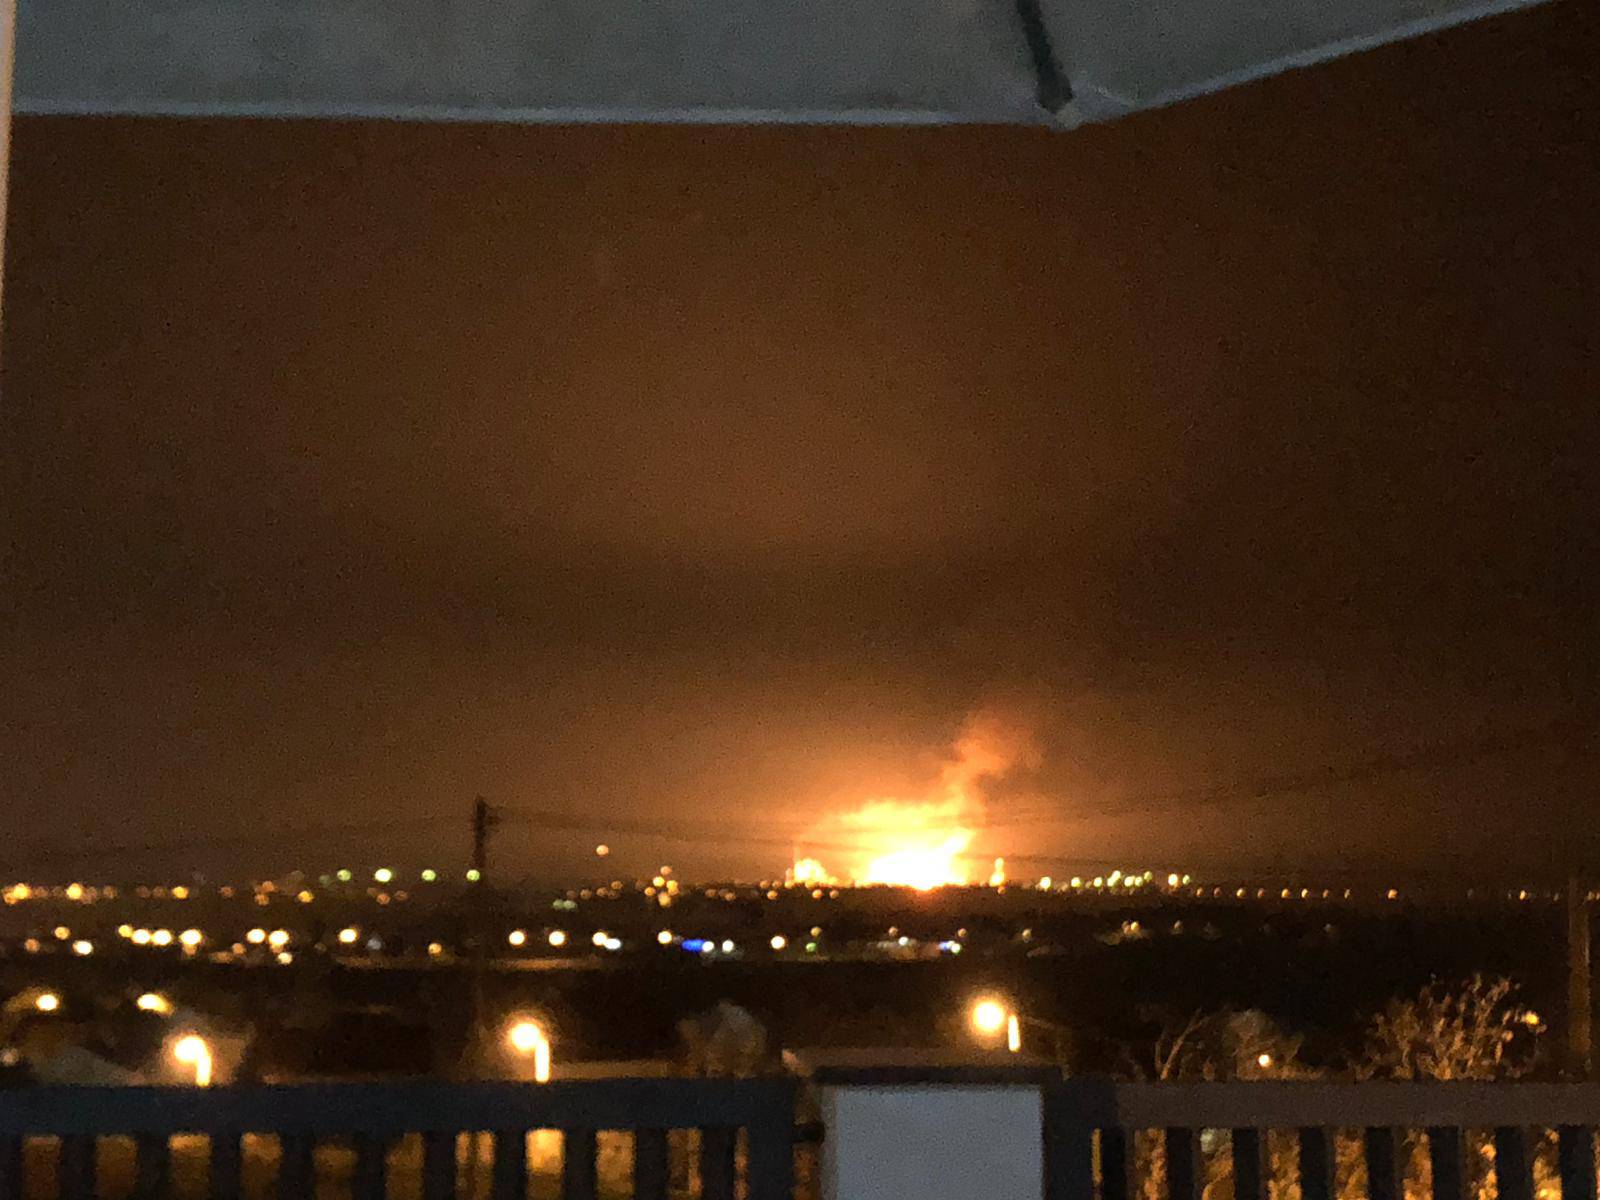 Užasni prizori: Vatra je 'gutala' dimnjake brodske rafinerije...